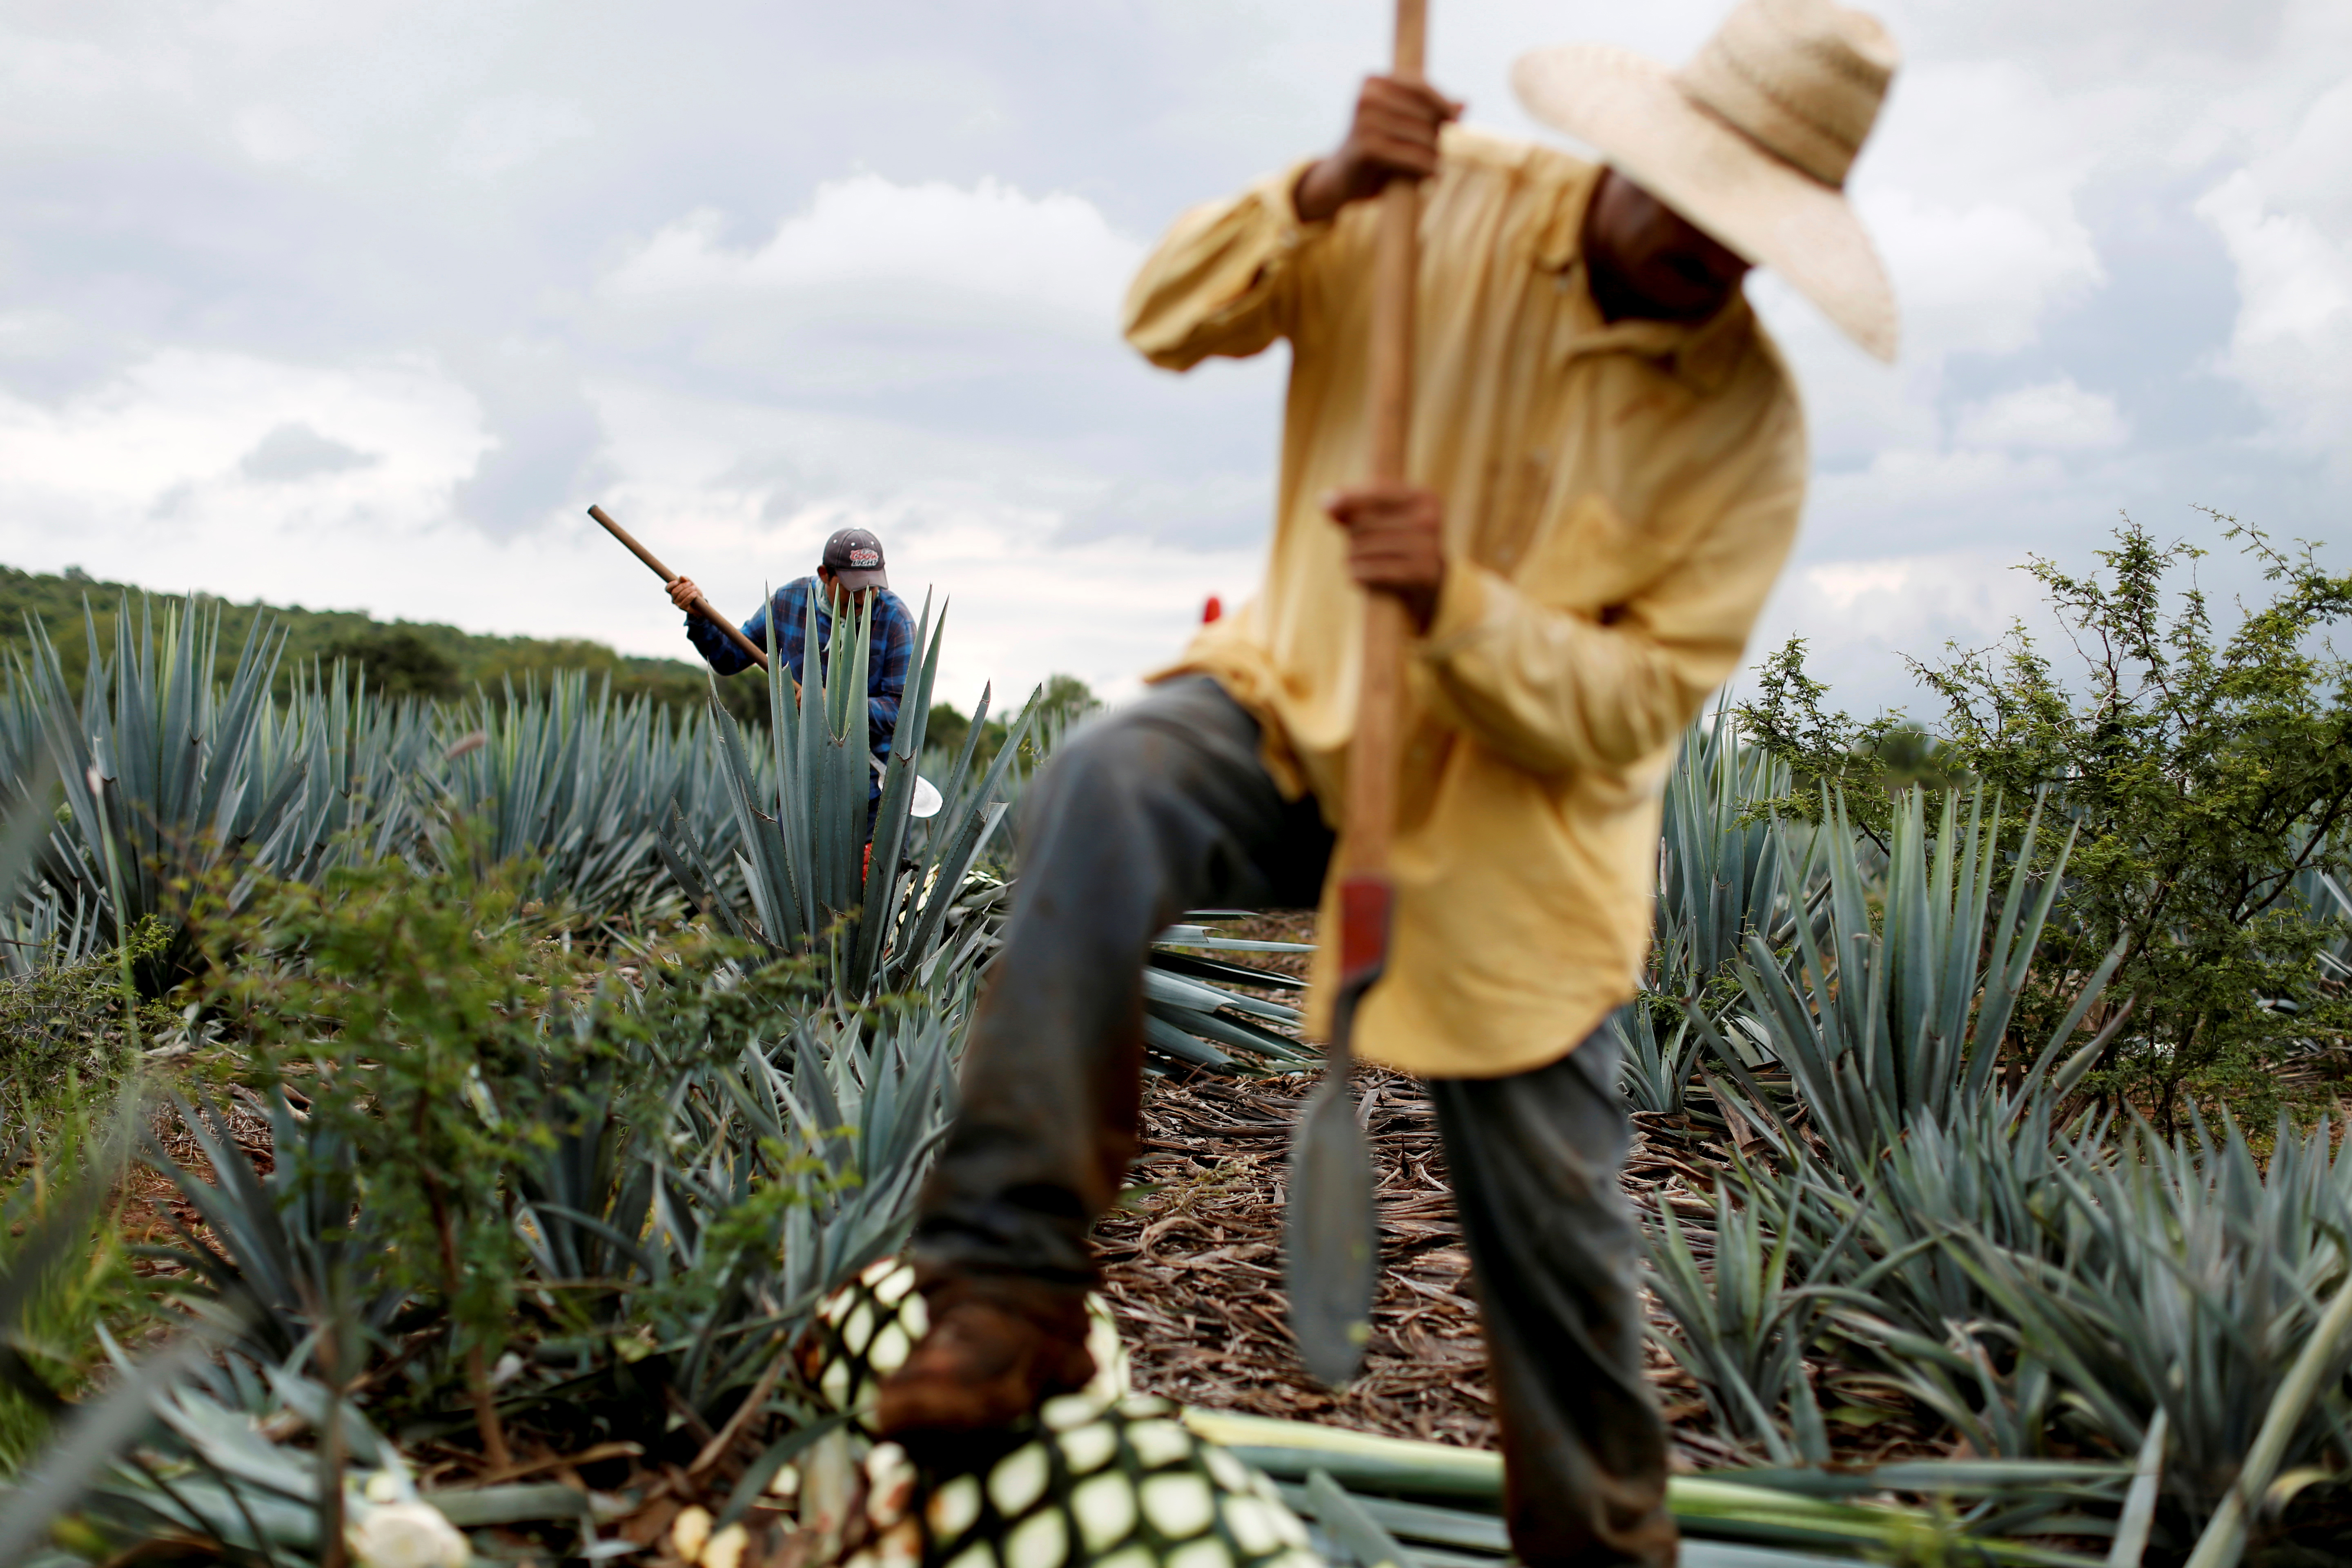 En Jalisco hay un pueblo llamado Tequila, en donde se produce la bebida. REUTERS/Carlos Jasso/File Photo